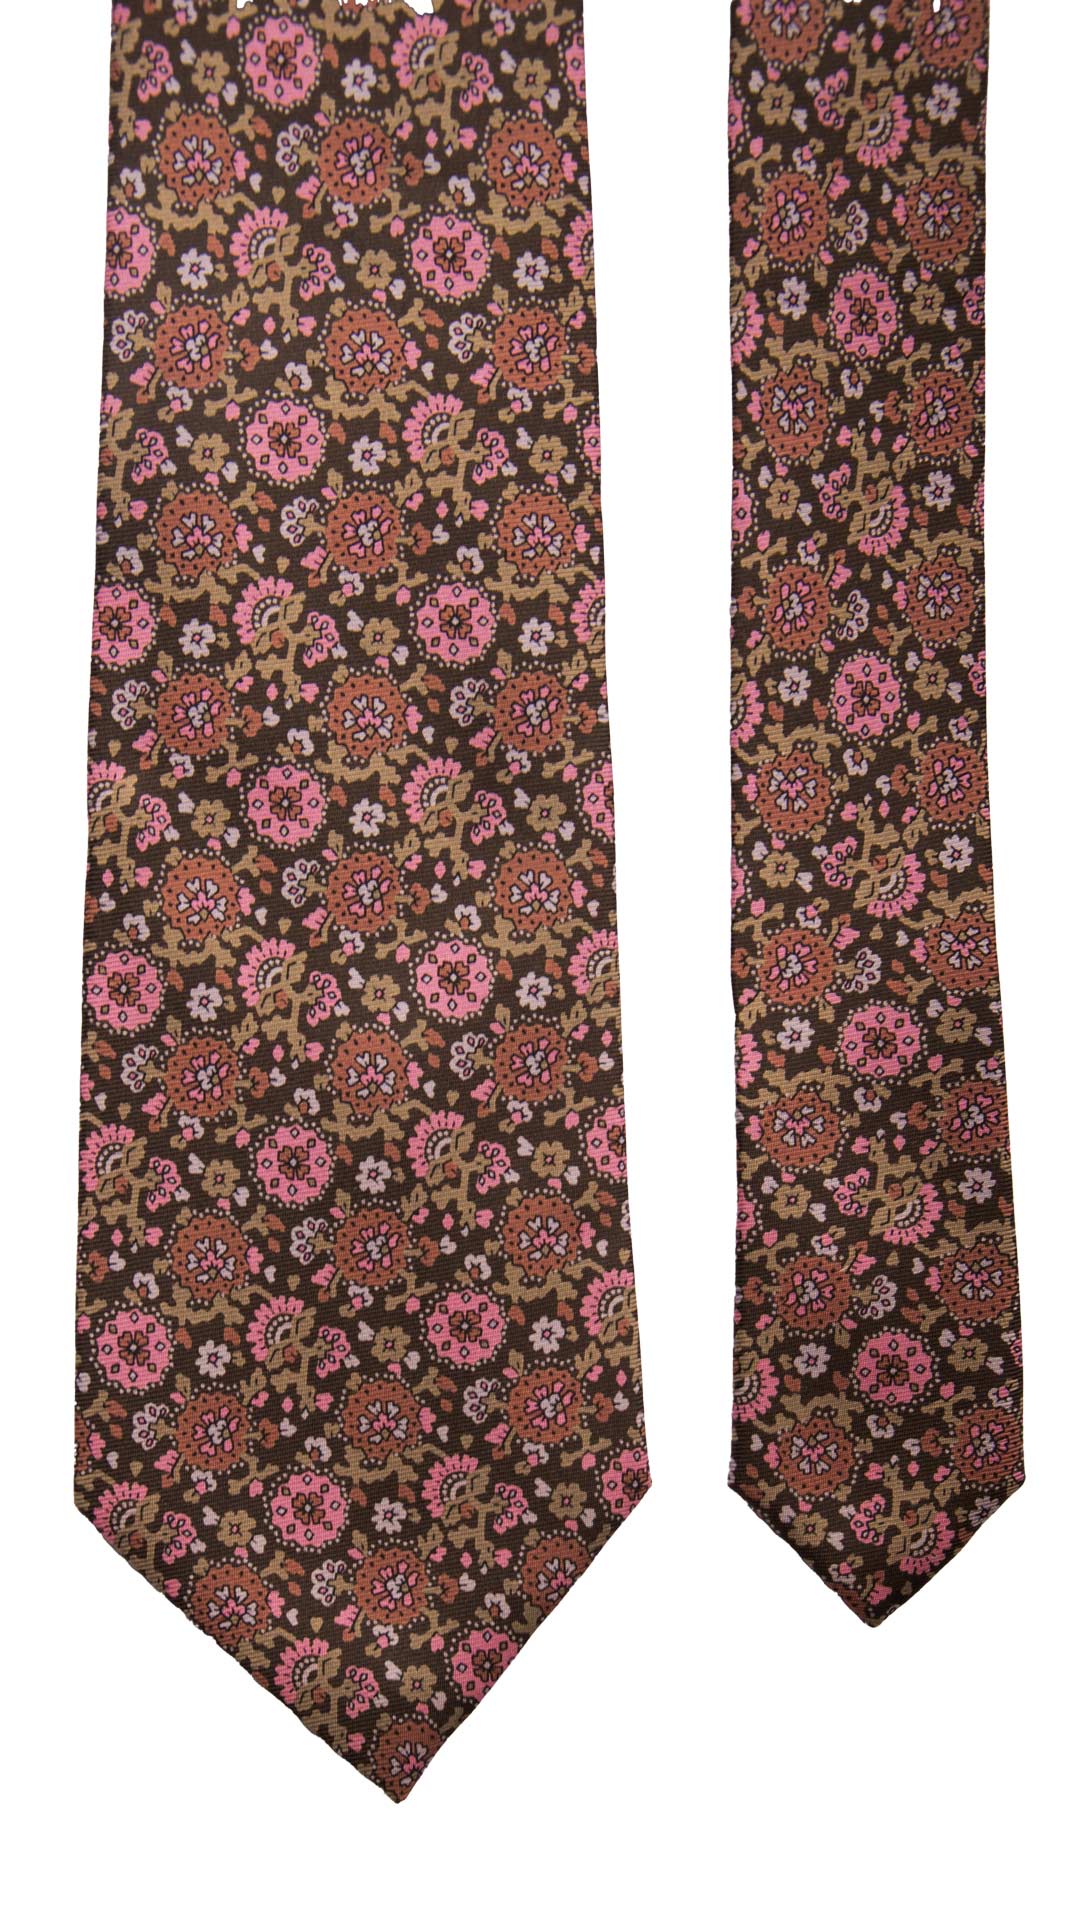 Cravatta Vintage in Twill di Seta Marrone A Fiori Rosa Rosa Antico Beige CV768 Pala